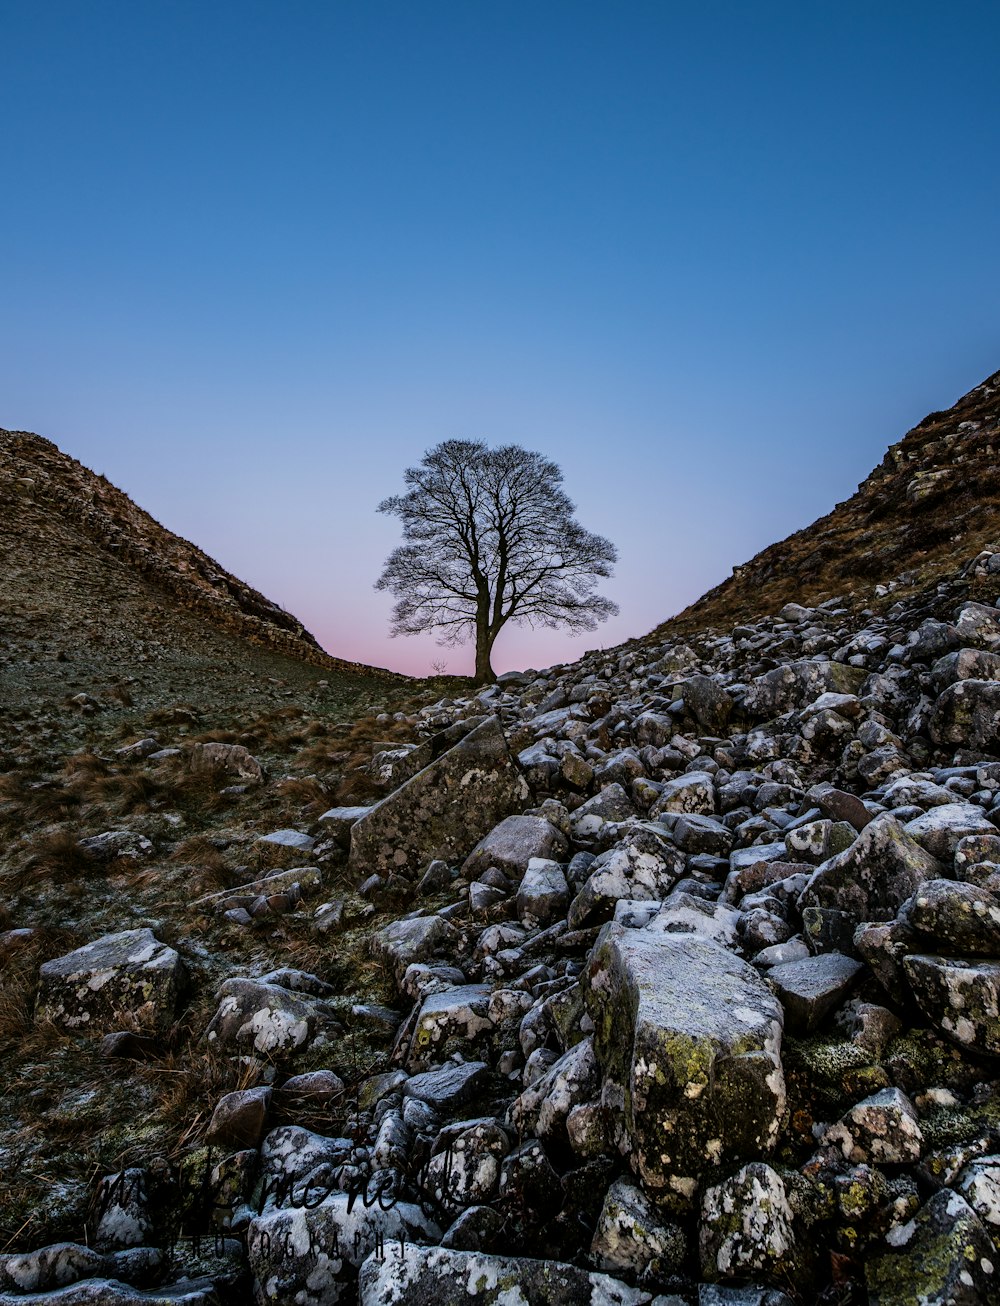 Un arbre solitaire au milieu d’un champ rocheux